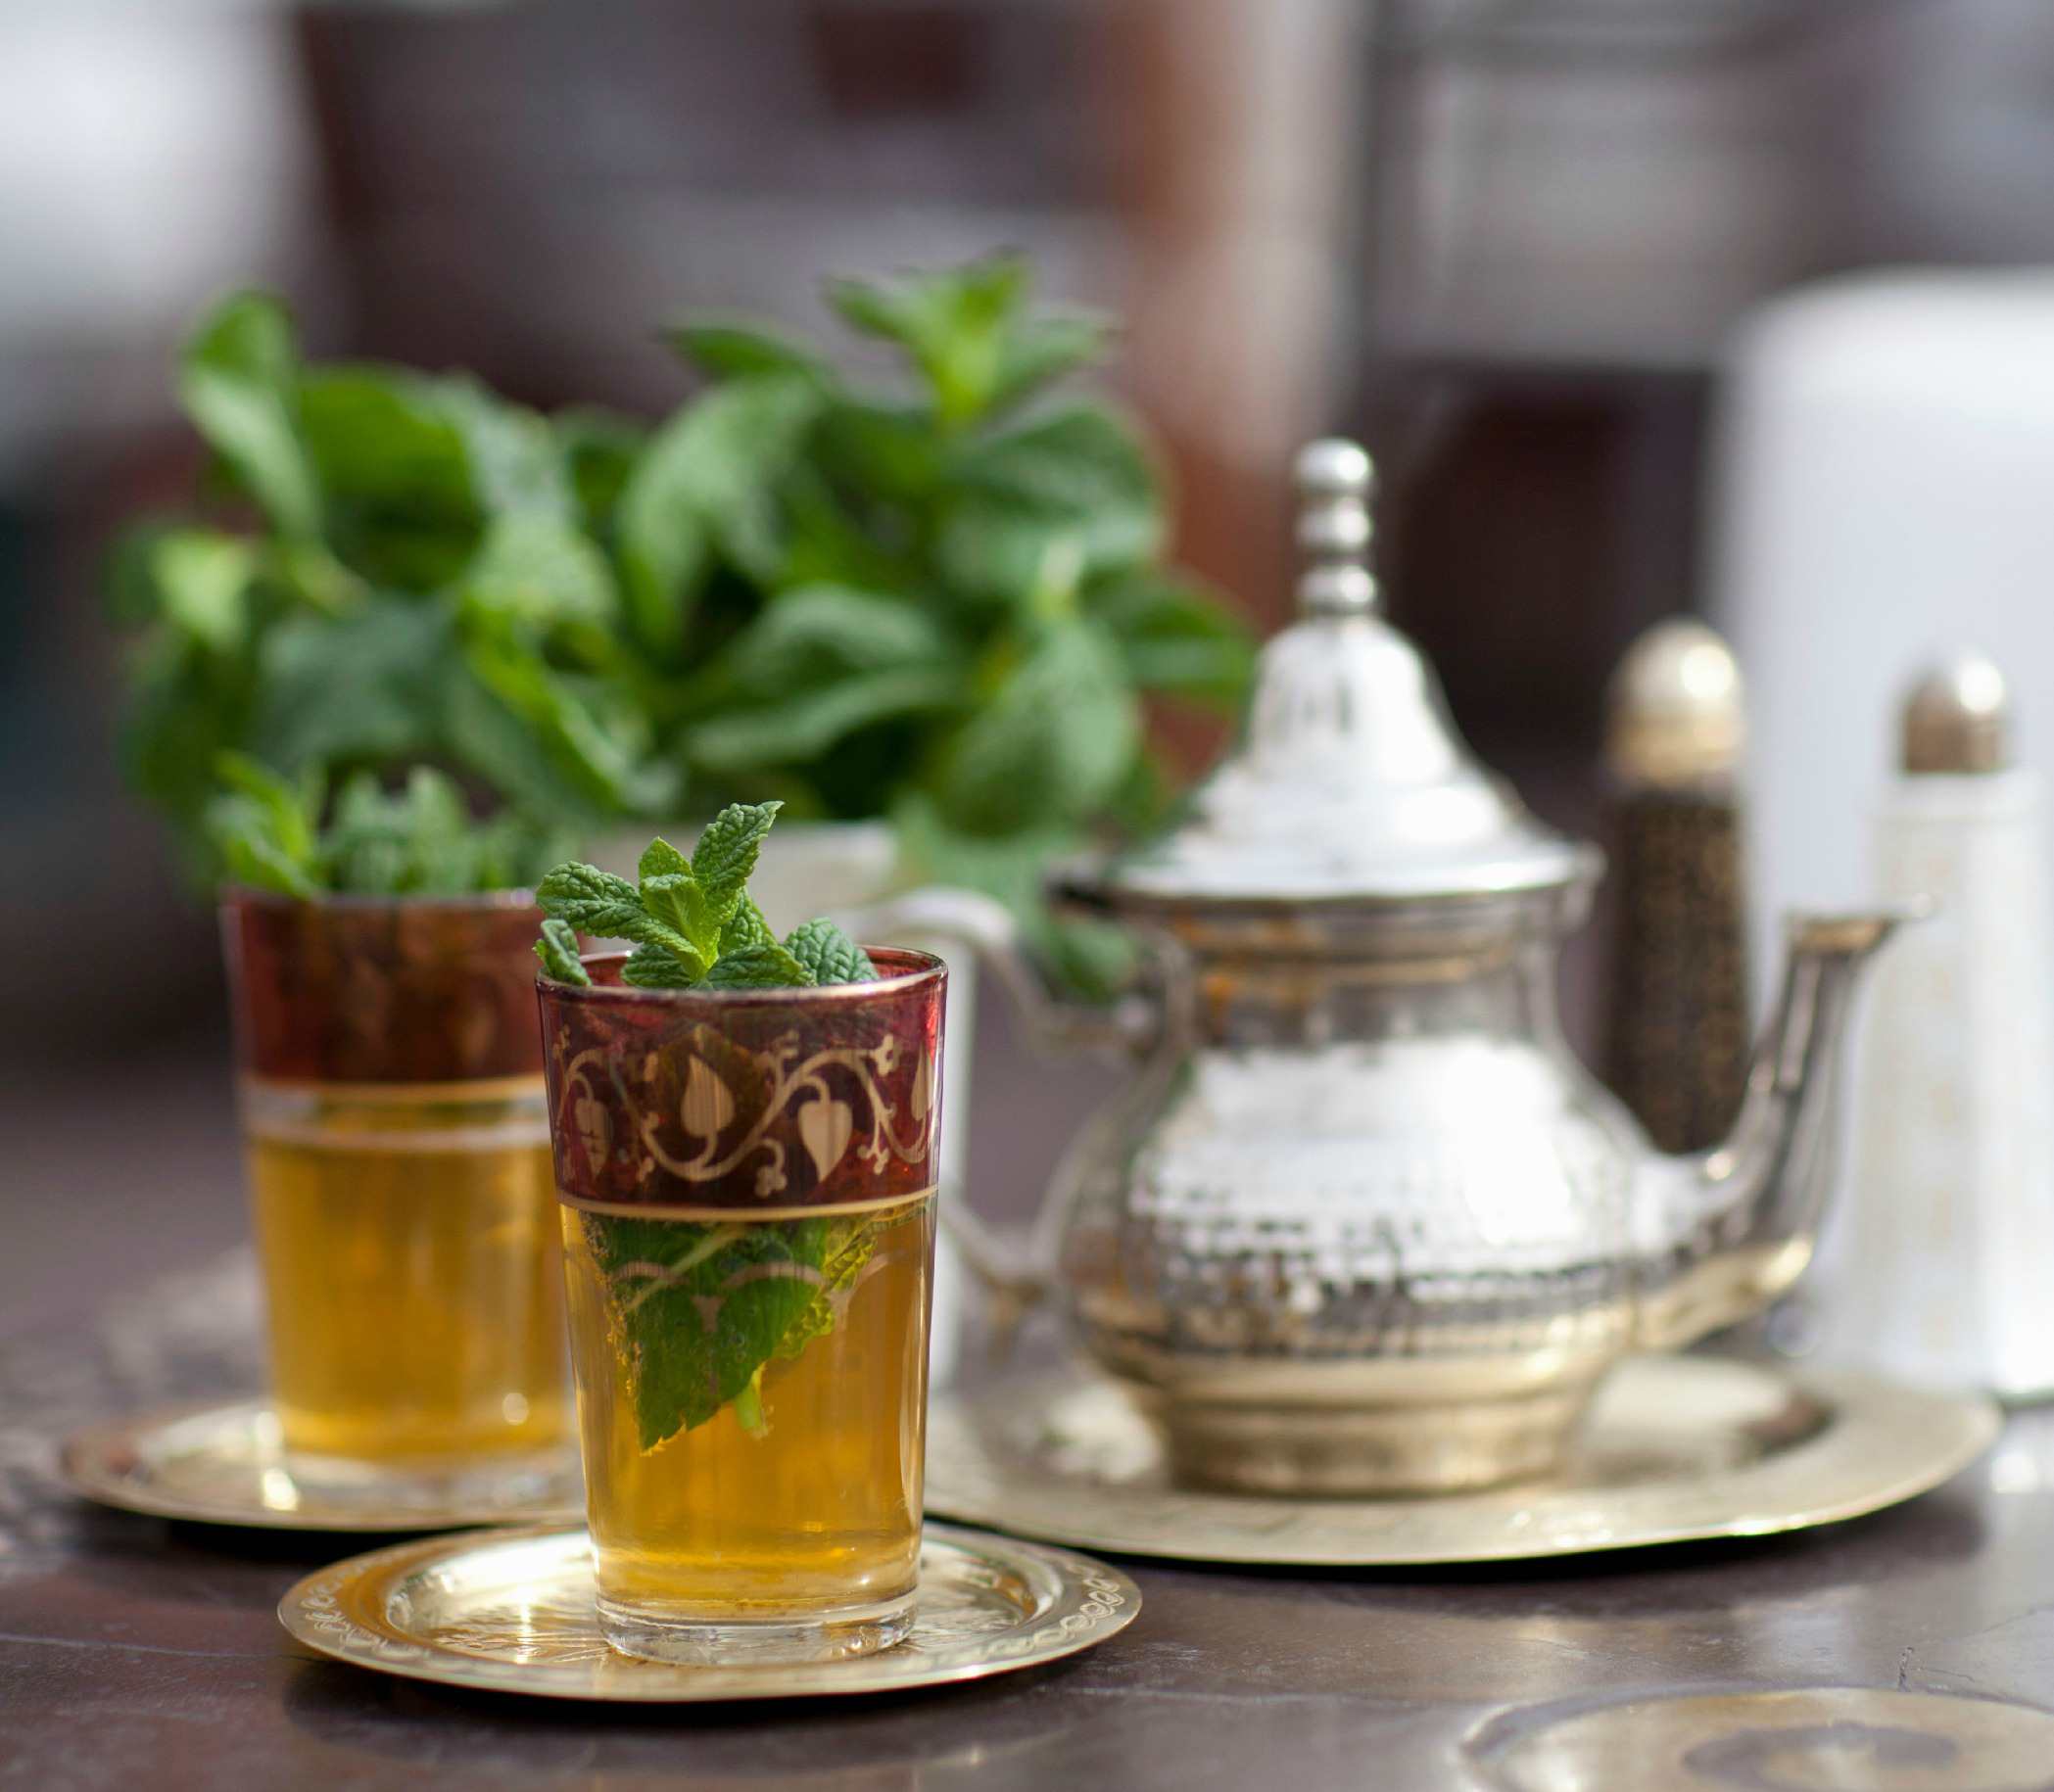 Марокканский чай (22 фото): лучшие рецепты, как приготовить с бадьяном, корицей и апельсином